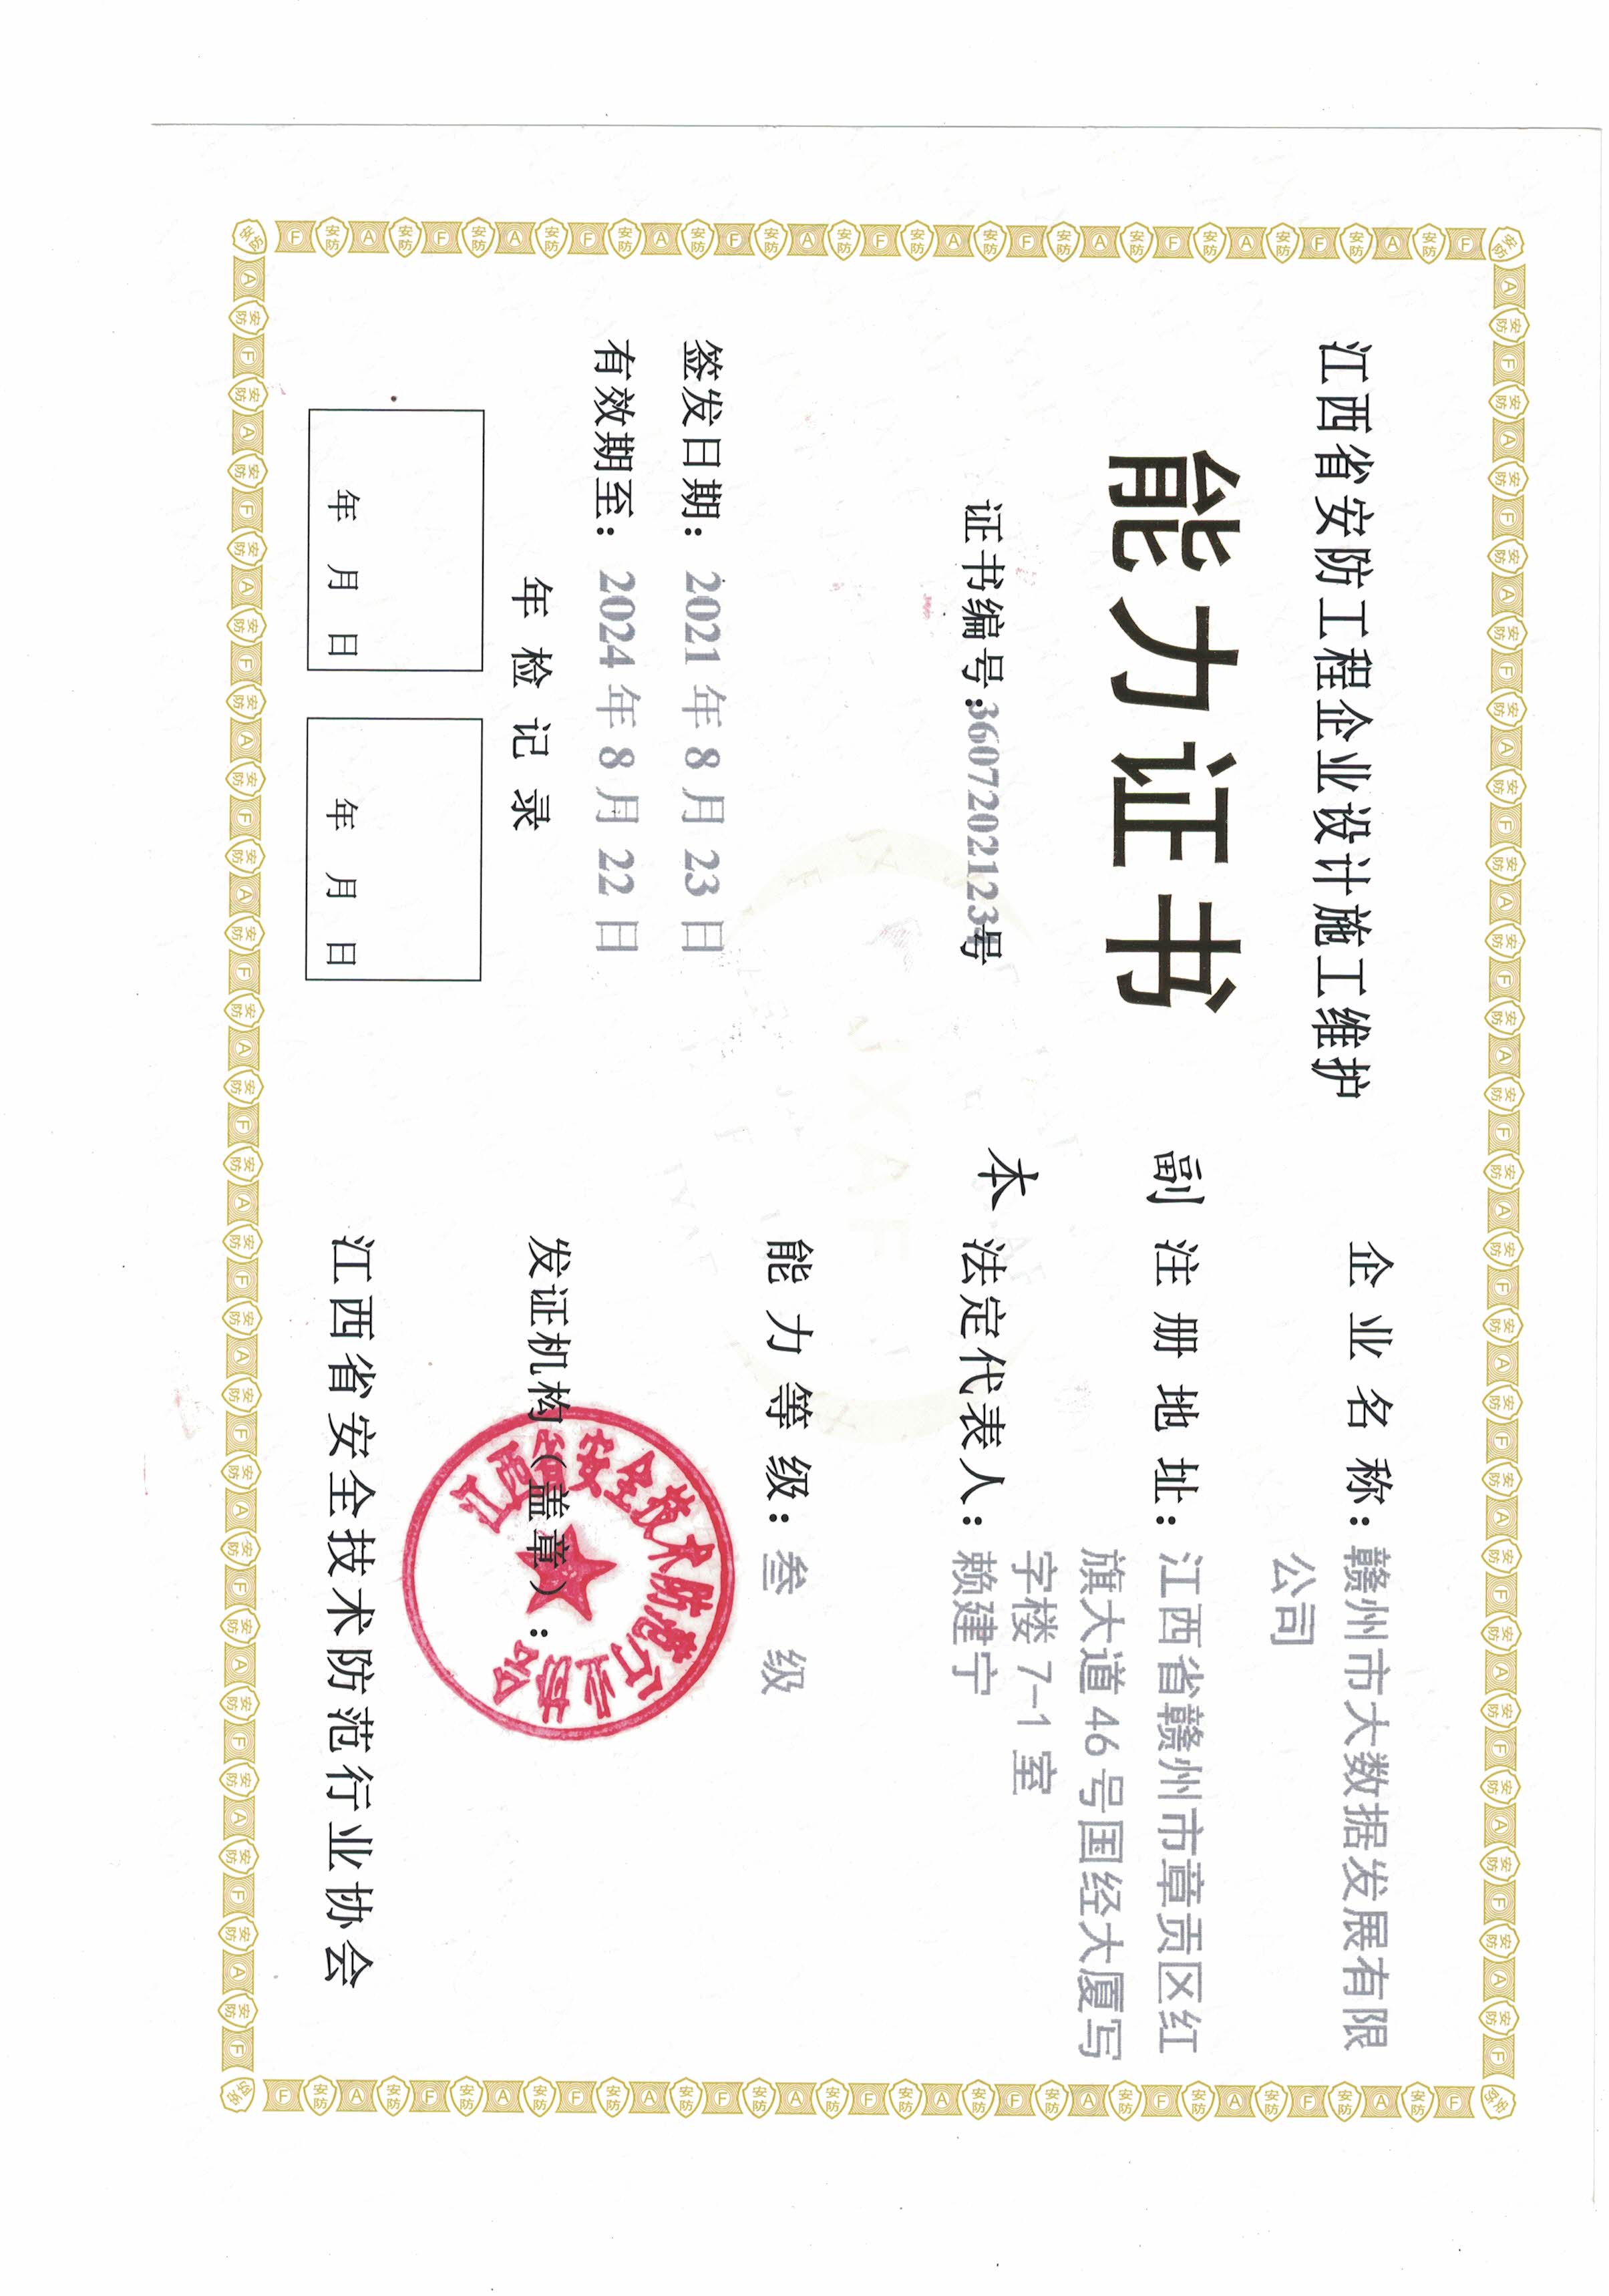 江西省安防工程企业设计施工维护能力证书